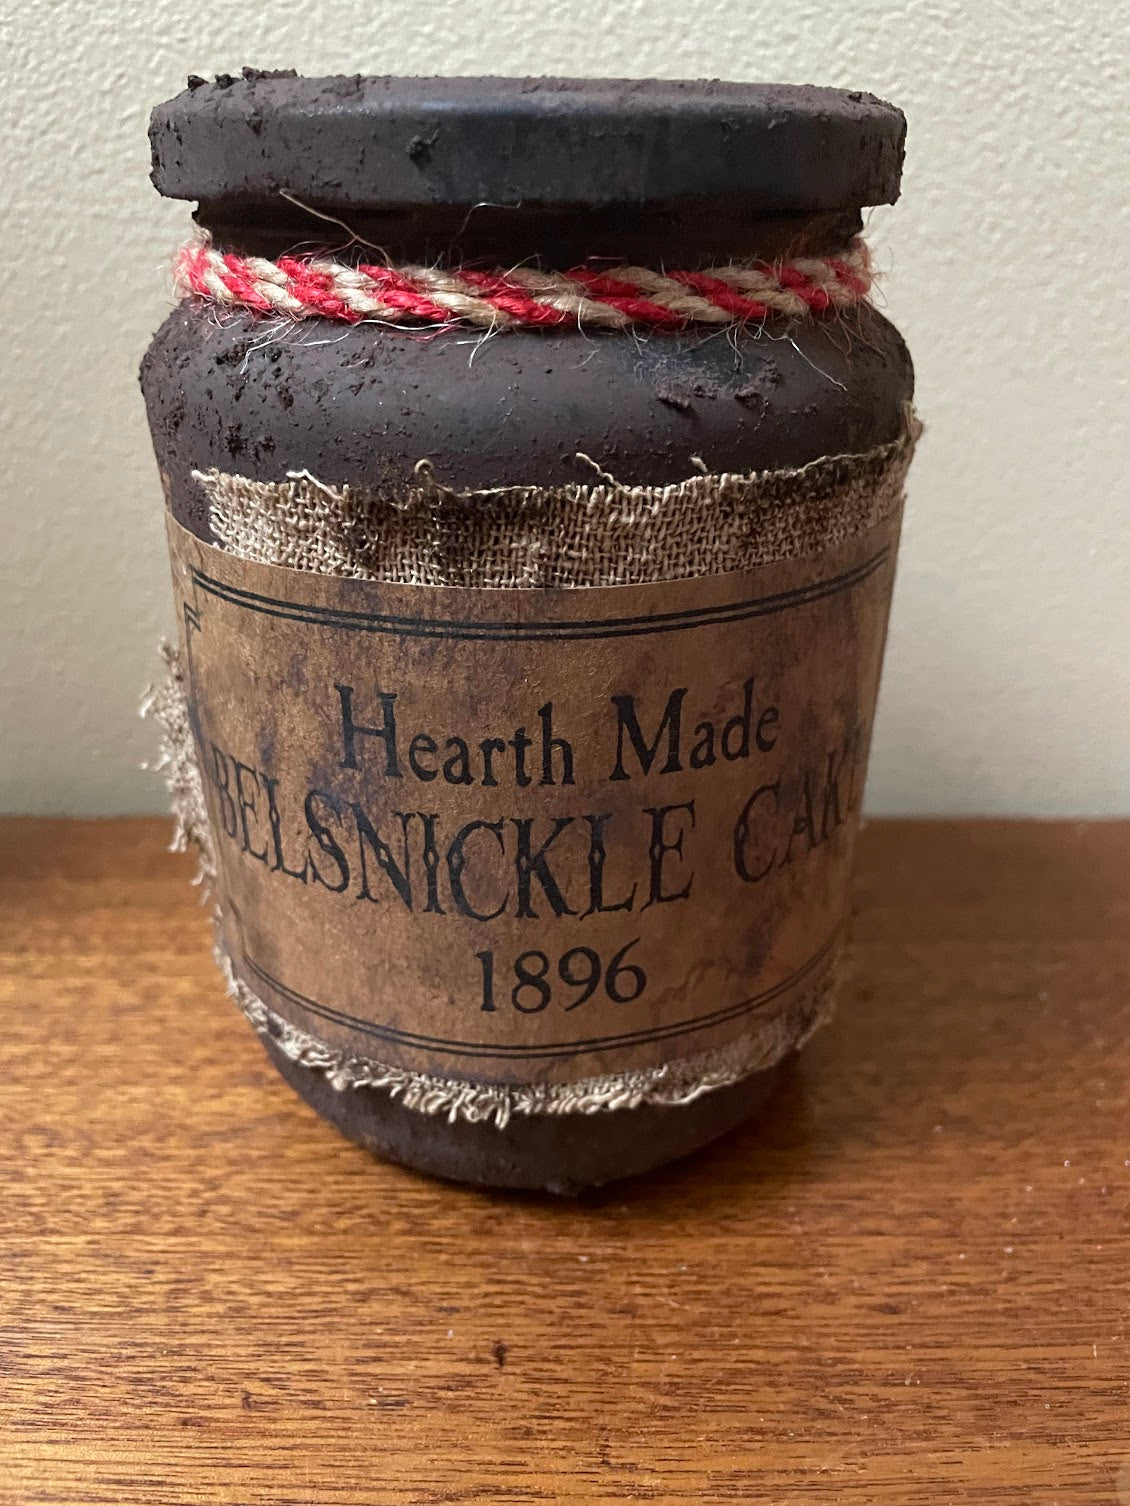 Primitive Christmas Handcrafted Hearthmade Belsnickle Cake Jar